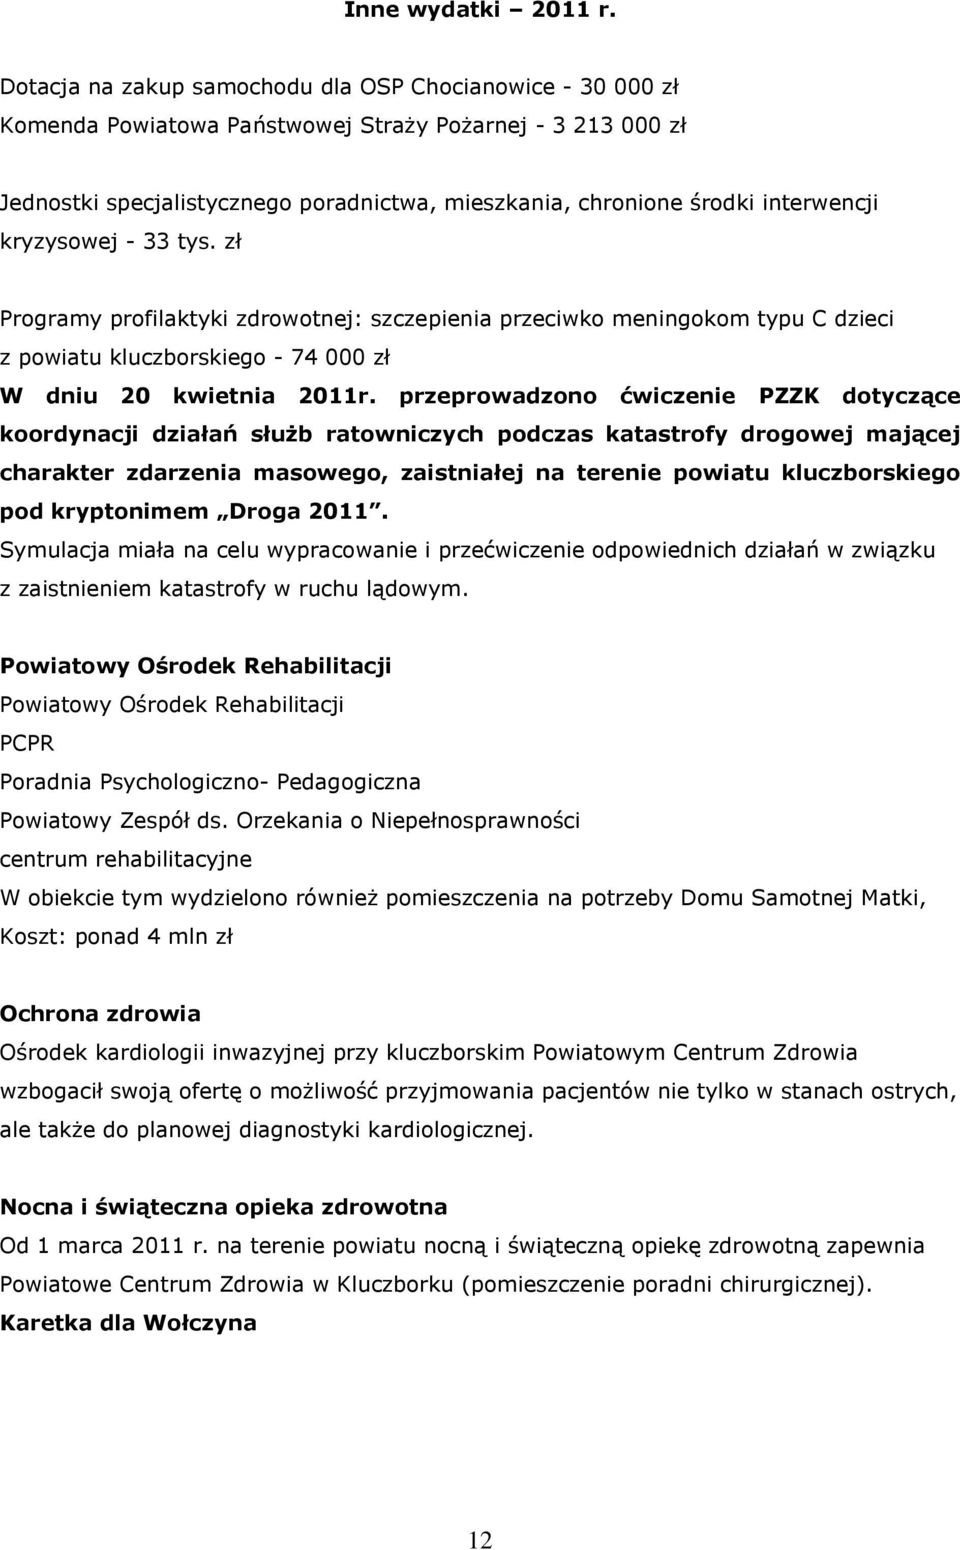 interwencji kryzysowej - 33 tys. zł Programy profilaktyki zdrowotnej: szczepienia przeciwko meningokom typu C dzieci z powiatu kluczborskiego - 74 000 zł W dniu 20 kwietnia 2011r.